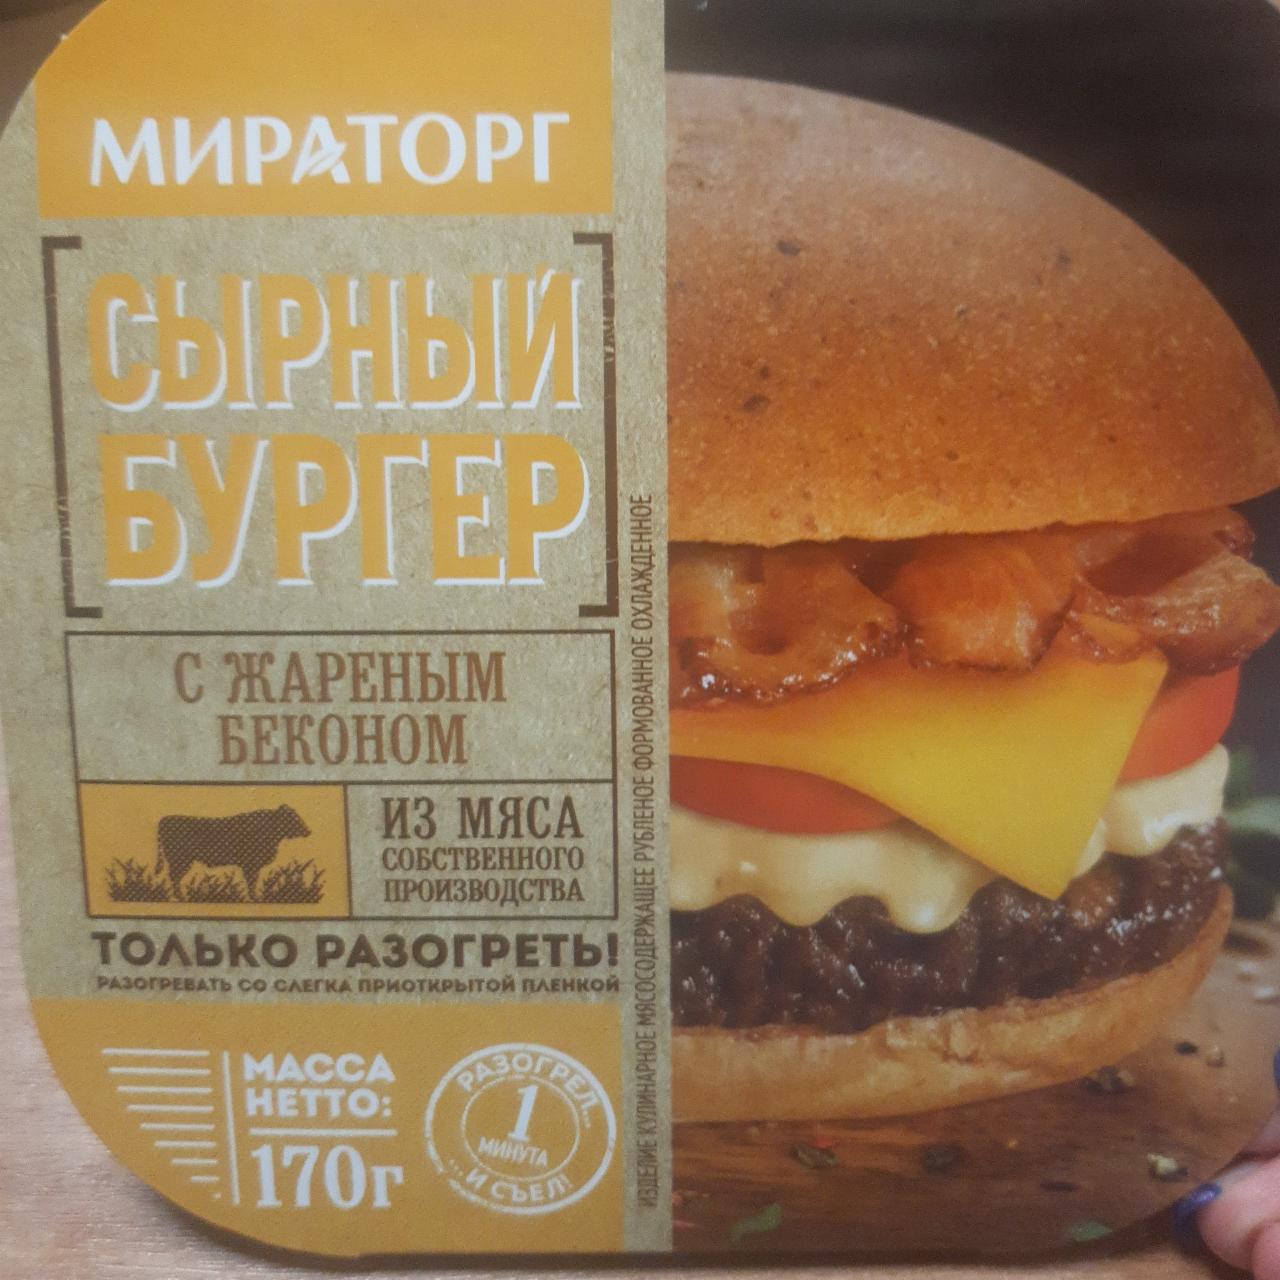 Фото - Сырный бургер с жареным беконом Мираторг